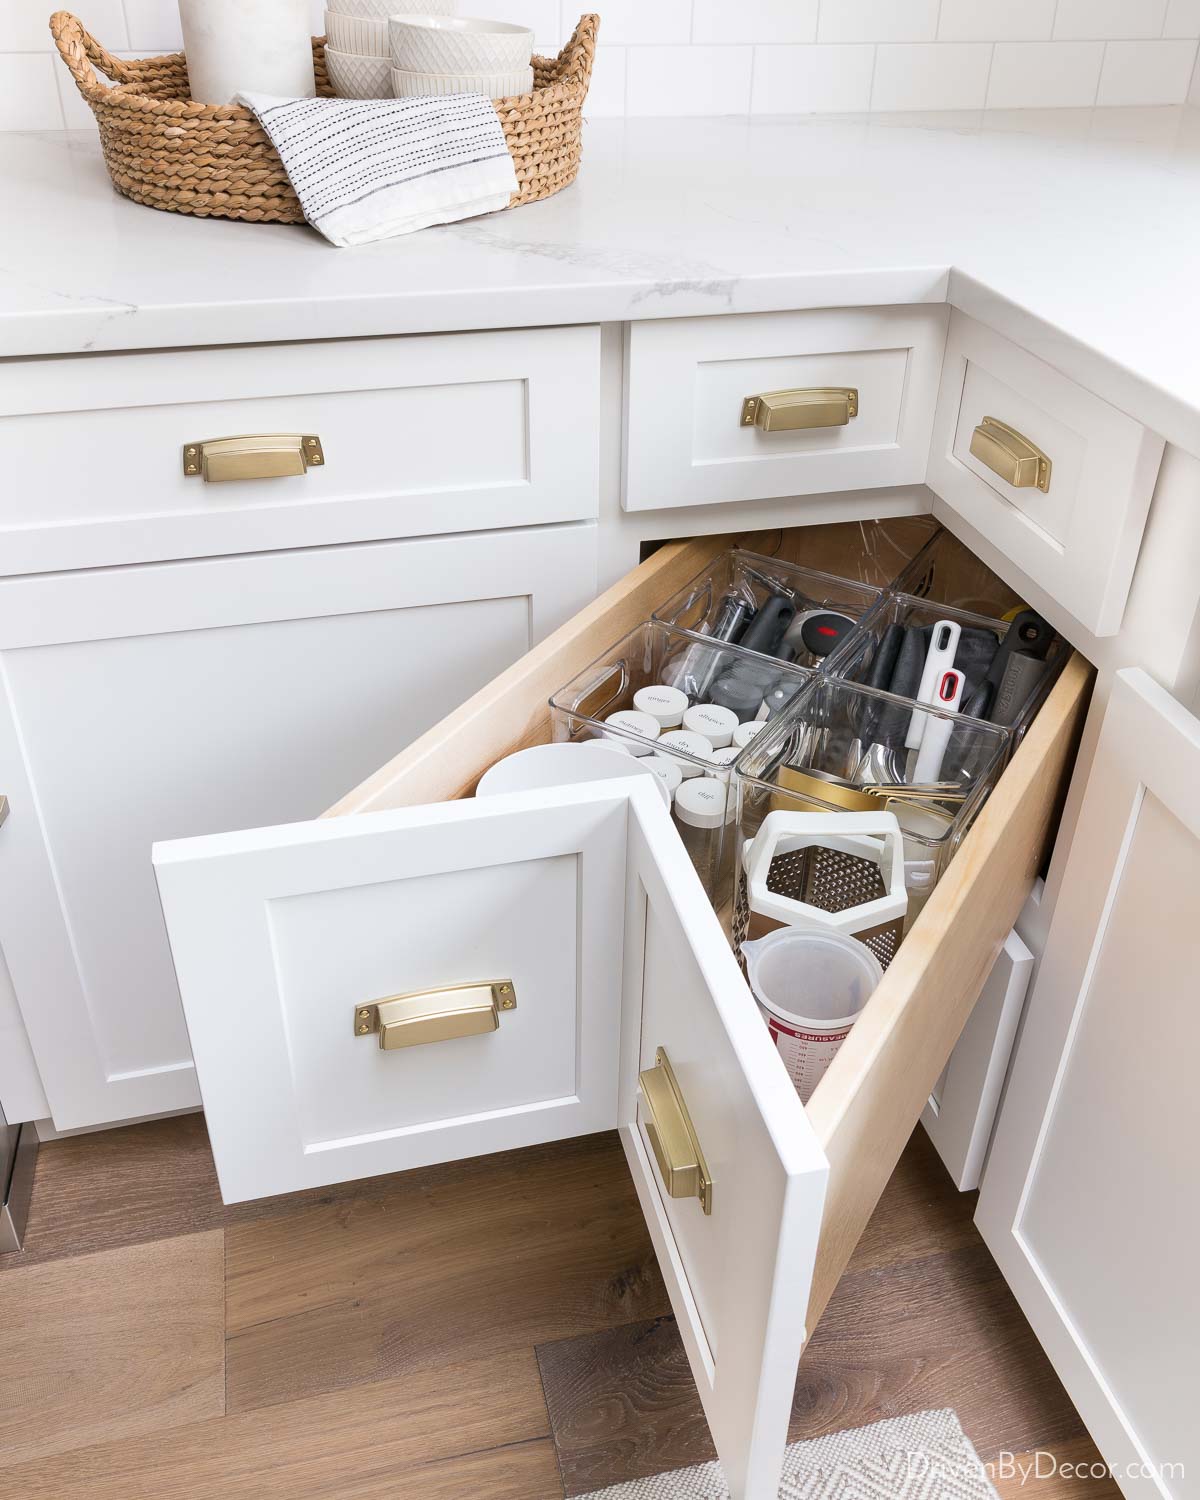 https://www.drivenbydecor.com/wp-content/uploads/2022/03/kitchen-remodel-idea-corner-drawer.jpg